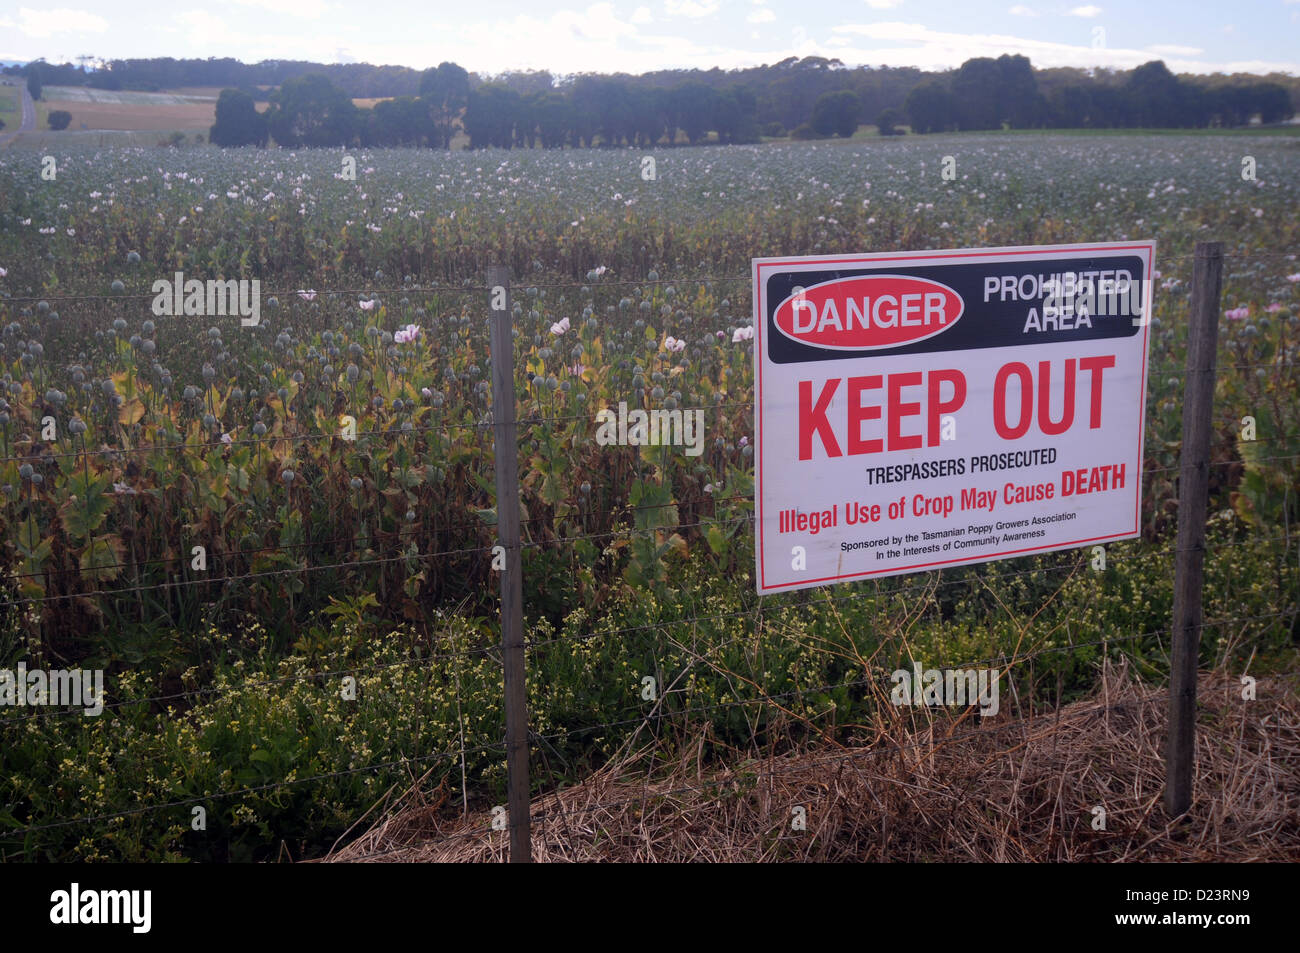 Schild Achtung, dass illegale Verwendung der Ernte verursachen Tod, Mohn-Felder des nördlichen Tasmanien, Australien Stockfoto